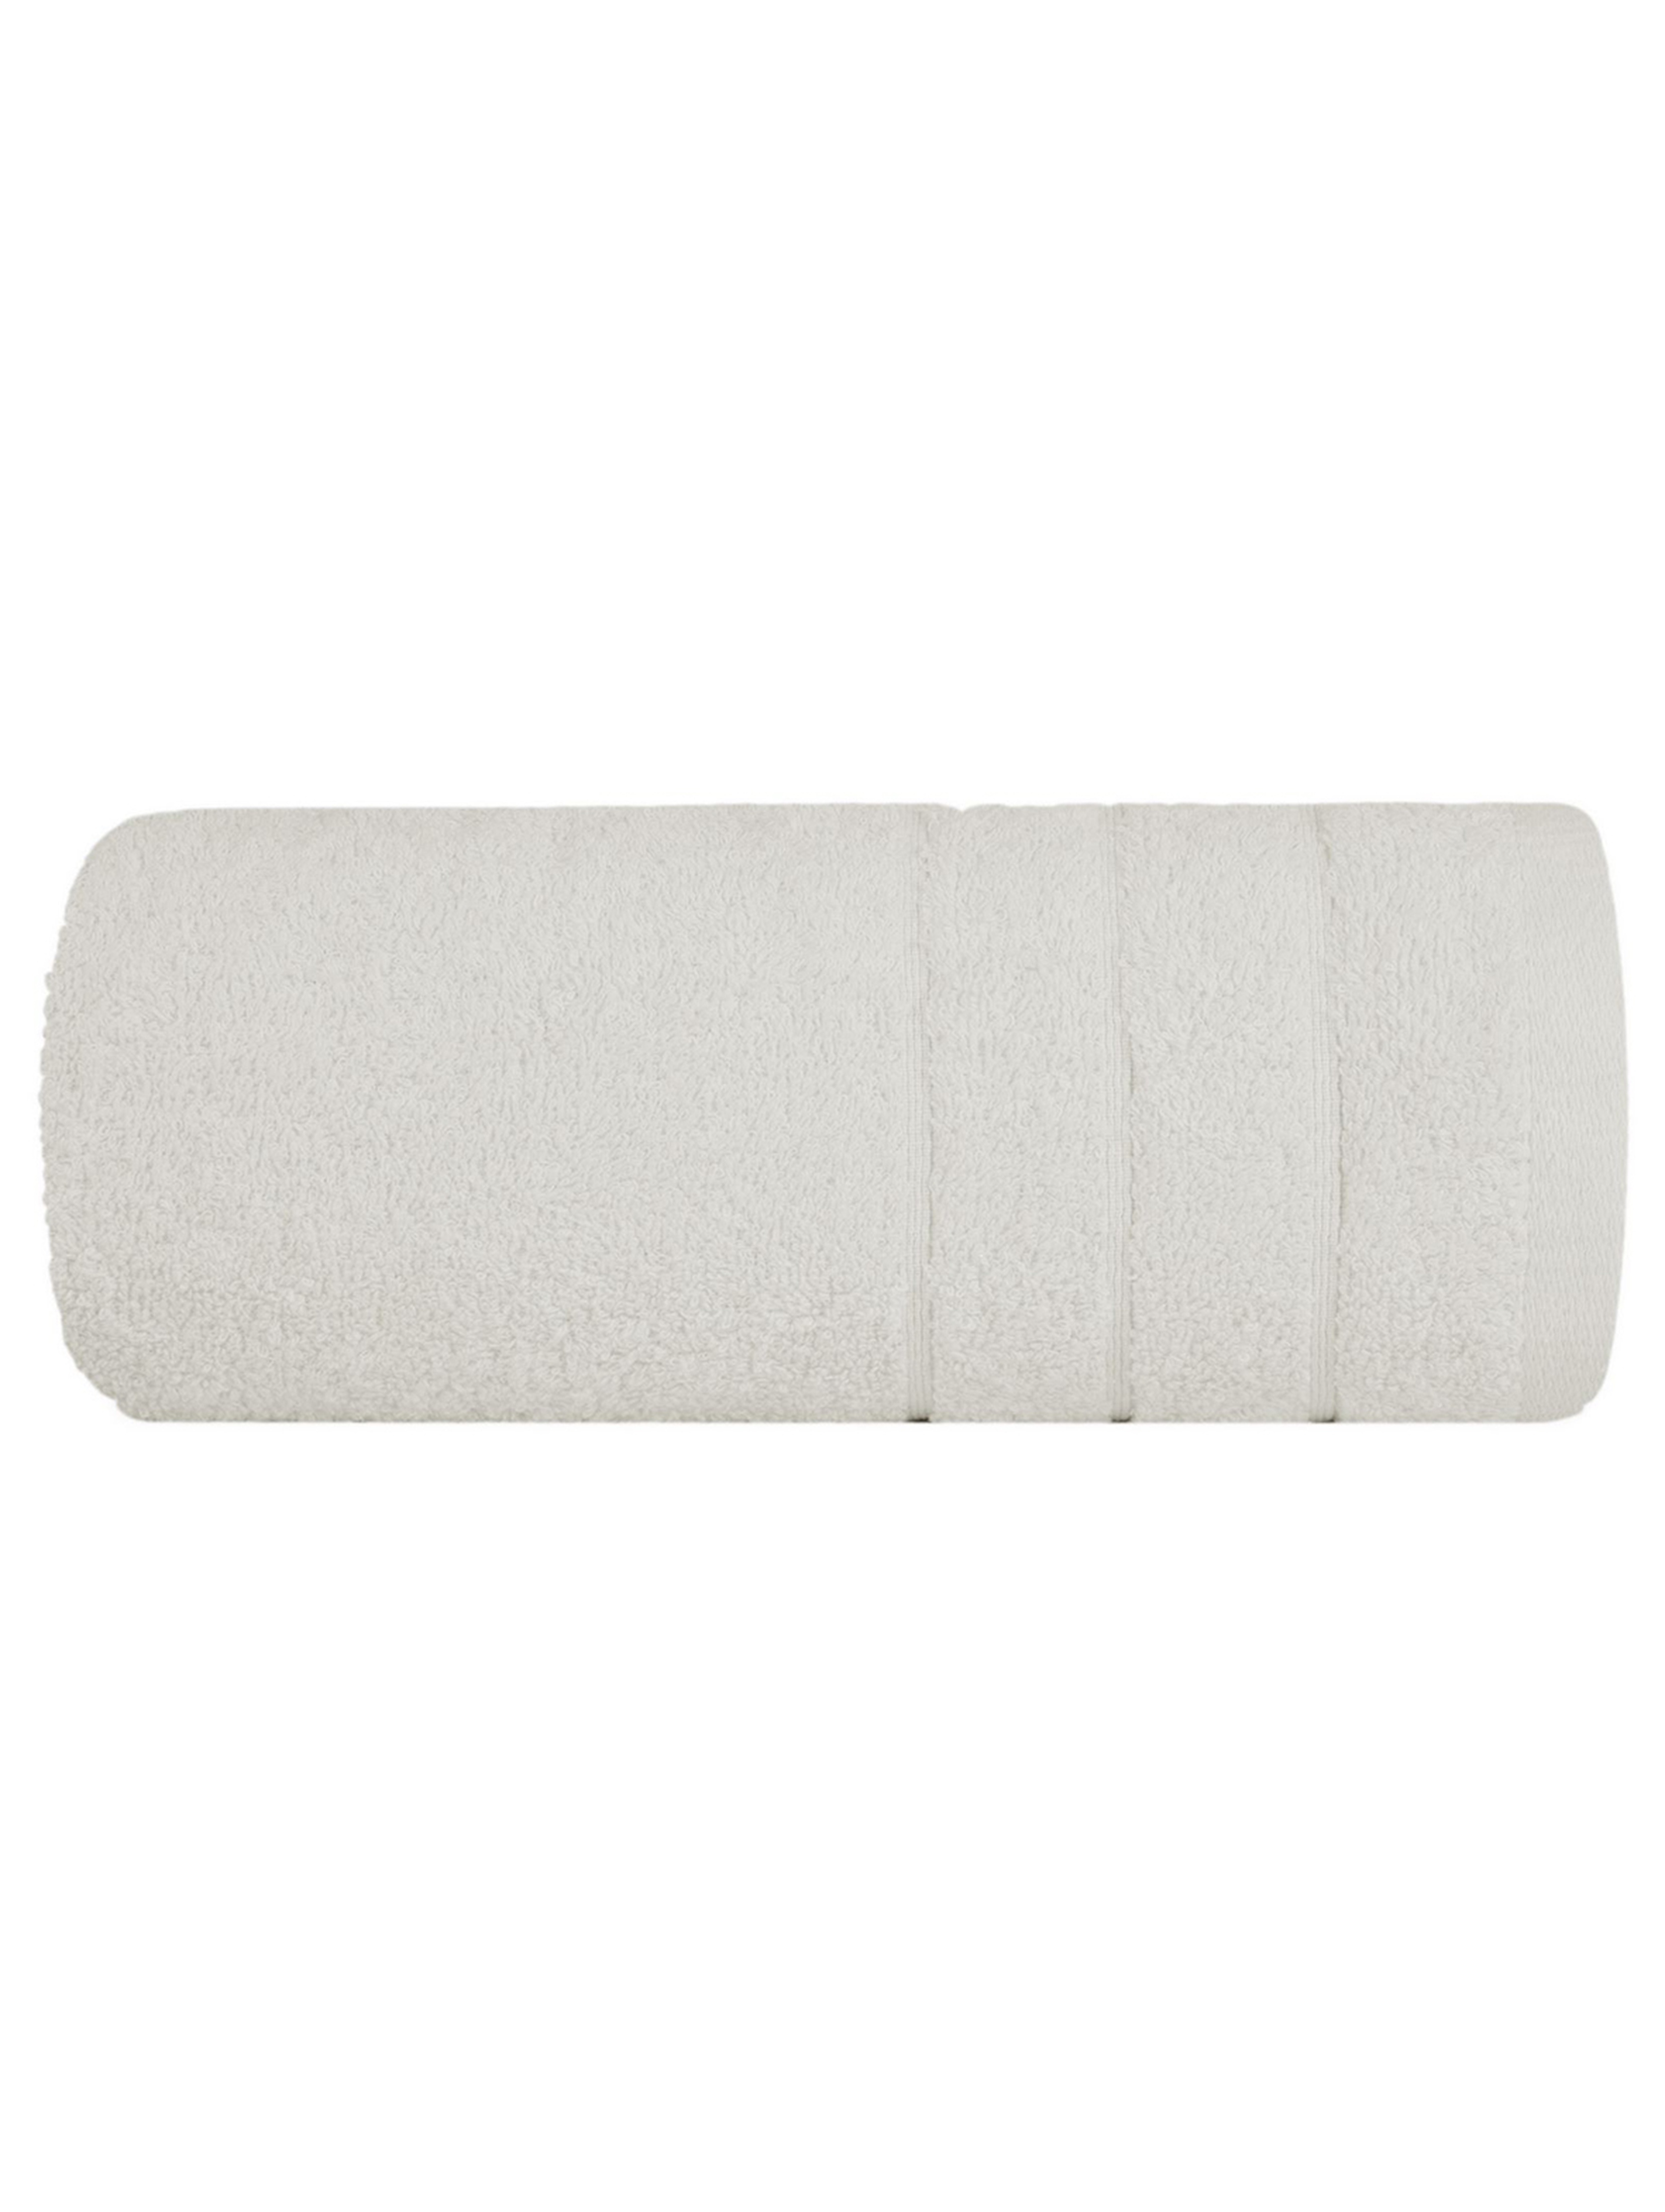 Ręcznik reni (02) 50x90 cm kremowy